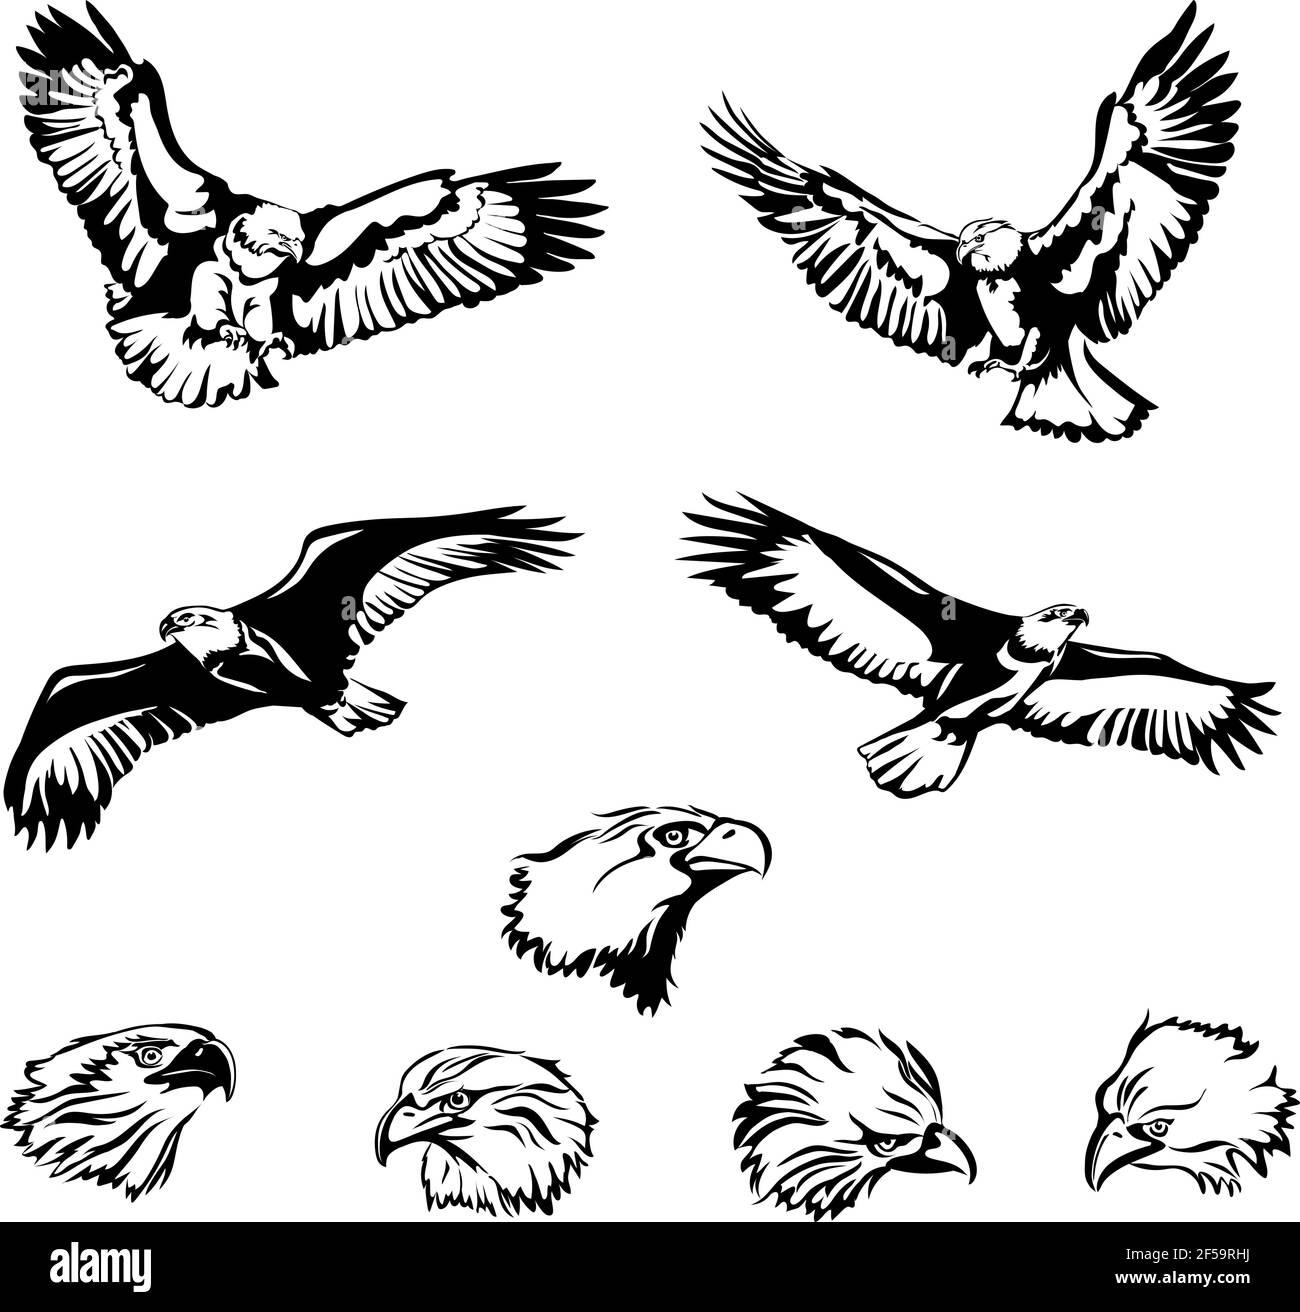 águila, águila, pájaro, alas, plumas, pluma, mosca, vuelo, vuelo, cabeza, ojos, ojos, pico, alas, cola, depredador, salvaje, ojos, vector, vector, gráfico Ilustración del Vector